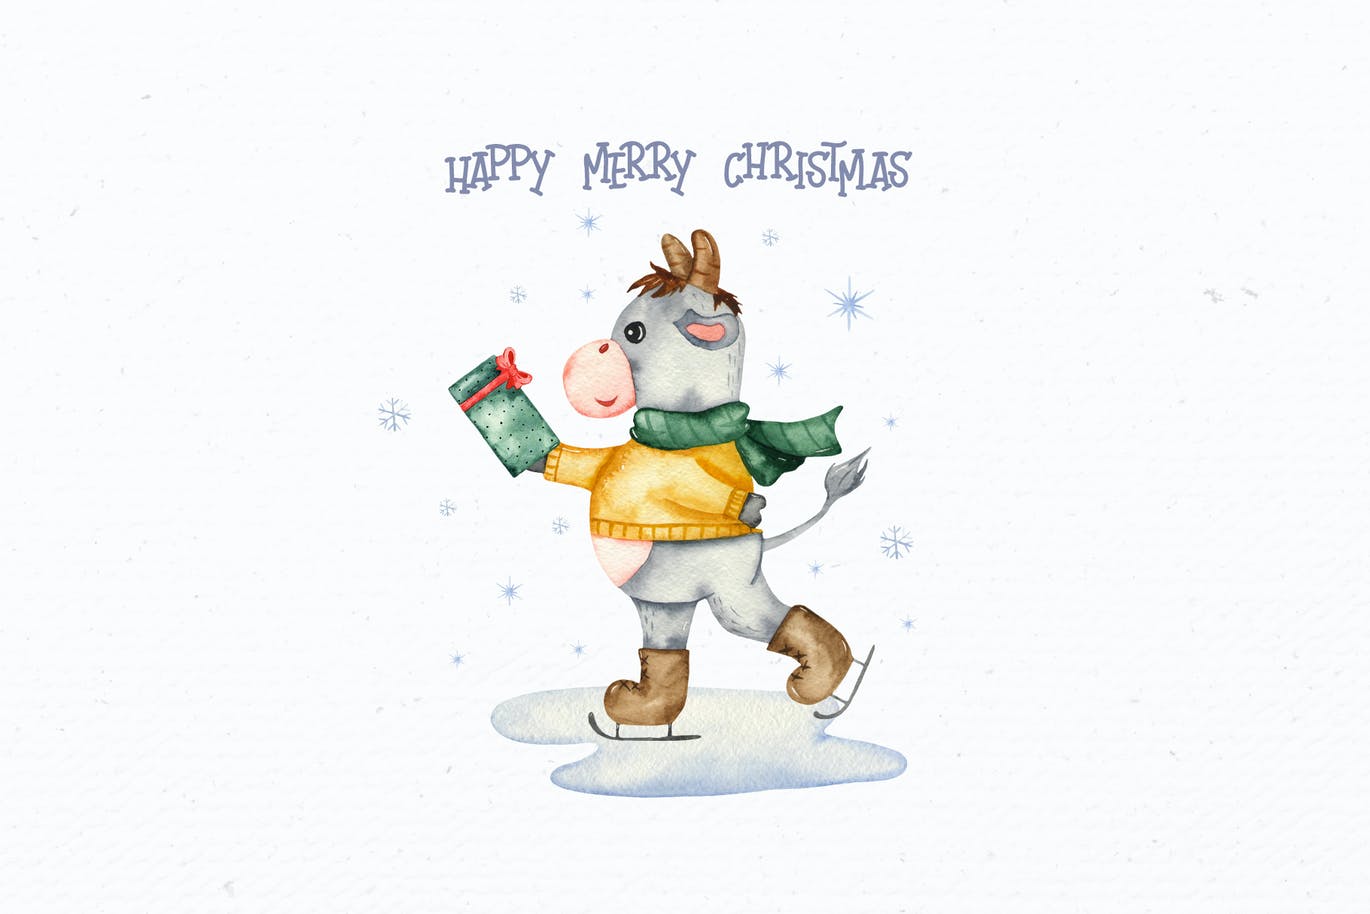 精品手绘水彩风格的新年圣诞节元素插画大集合-JPG，PNG，PSD源文件,编号:82625269